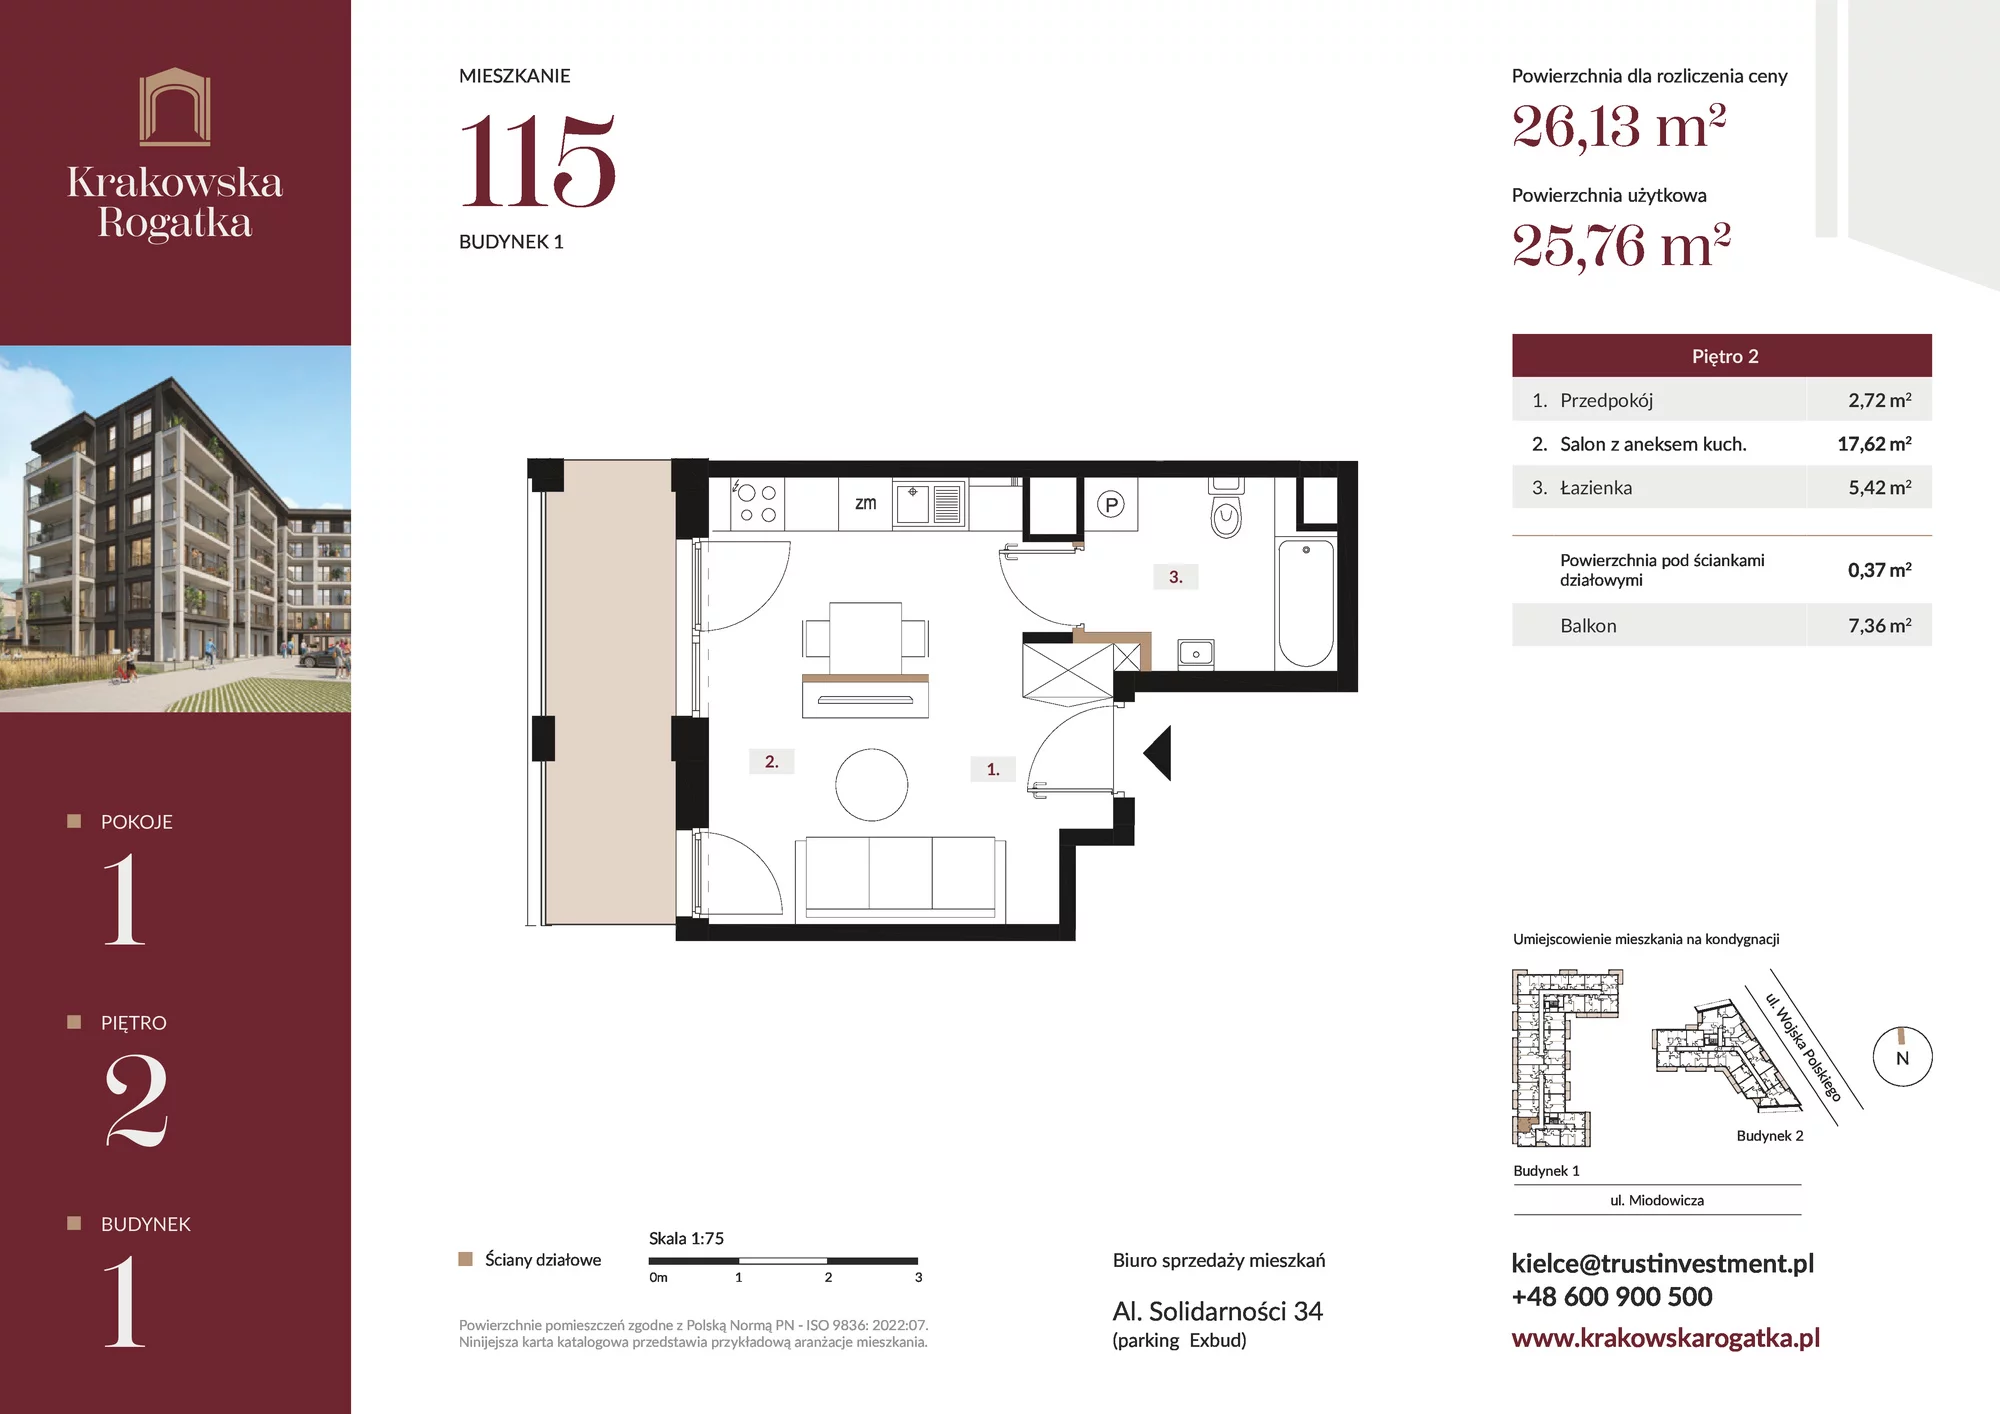 Mieszkanie 26,13 m², piętro 2, oferta nr Budynek 1 Mieszkanie 115, Krakowska Rogatka, Kielce, ul. Miodowicza 1